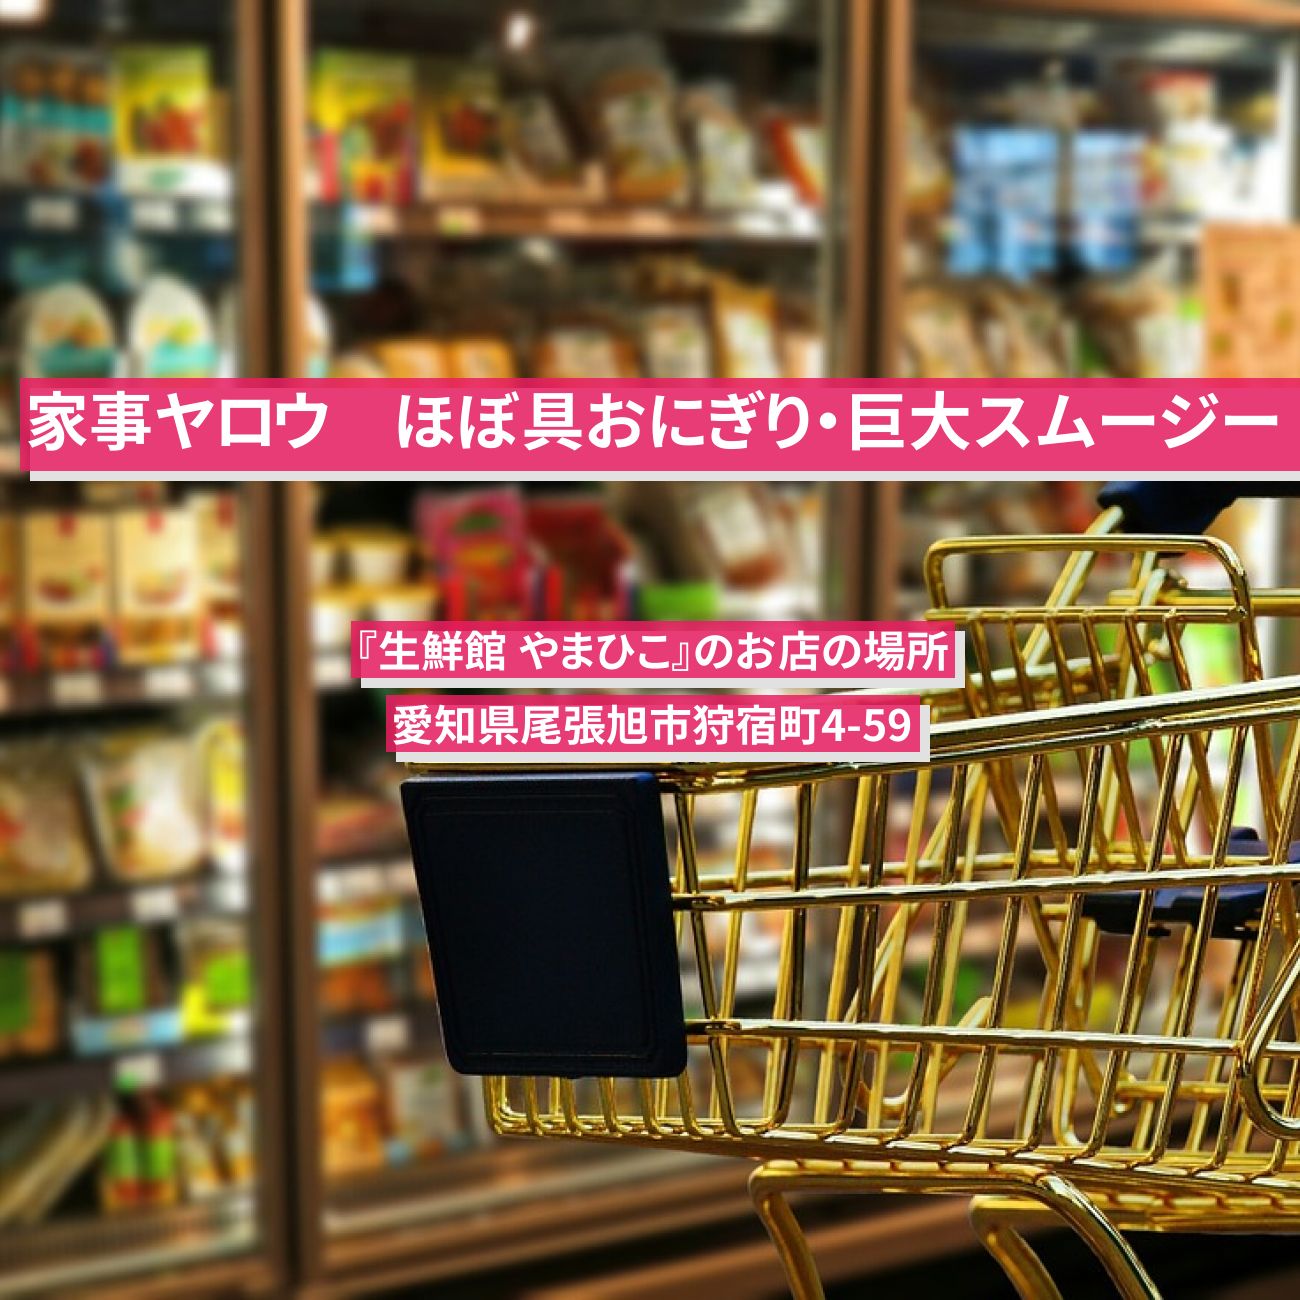 【家事ヤロウ】ほぼ具おにぎり・巨大スムージー『生鮮館 やまひこ』愛知のご当地スーパーのお店の場所